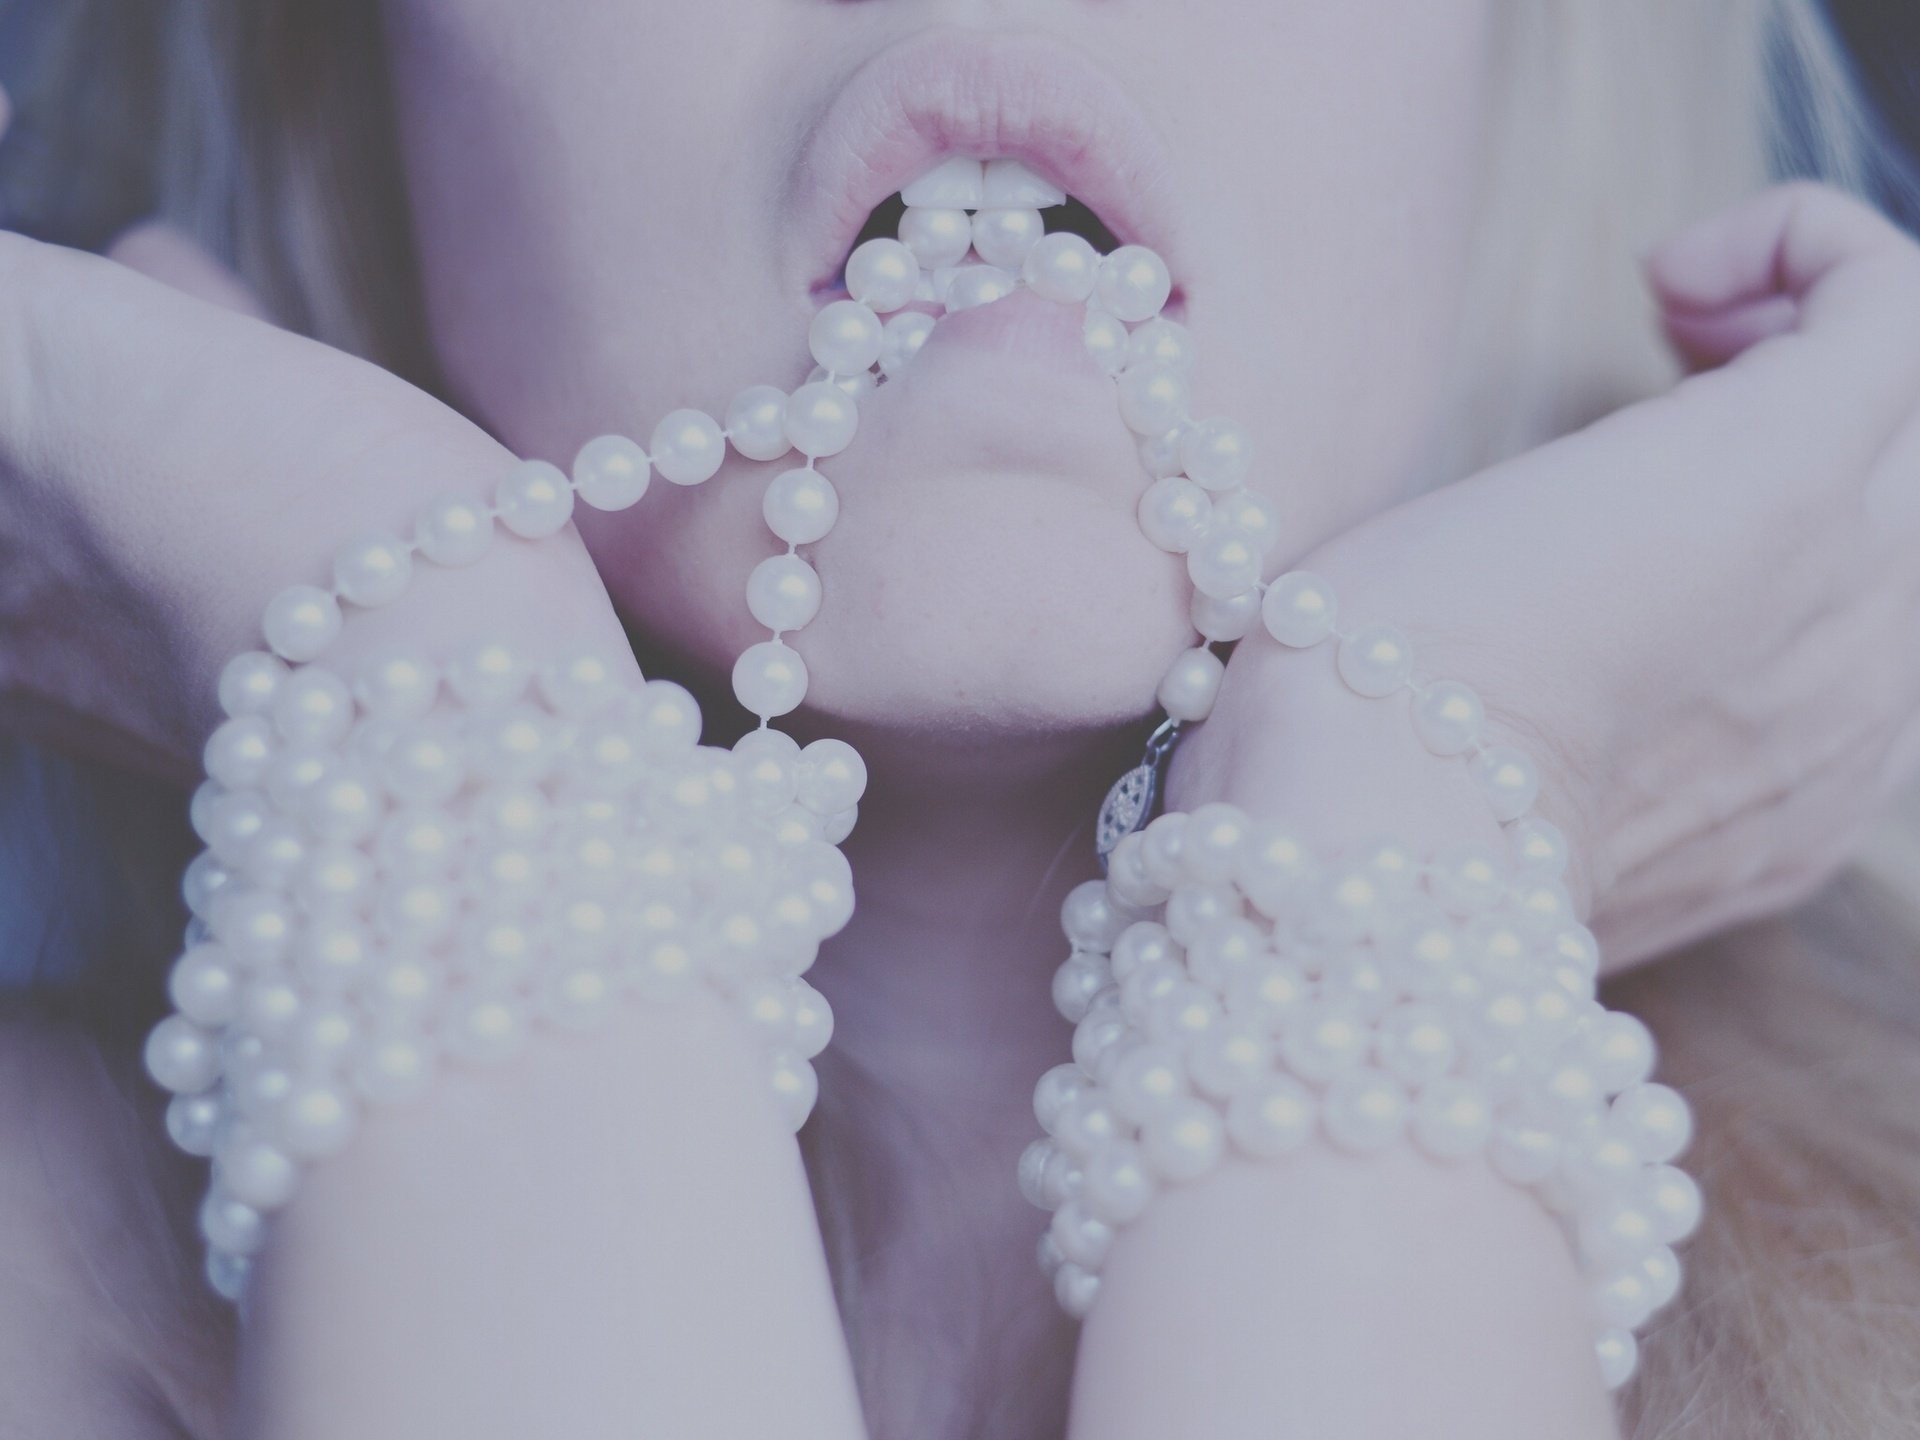 People 1920x1440 filter women face bracelets pearls model open mouth lips closeup